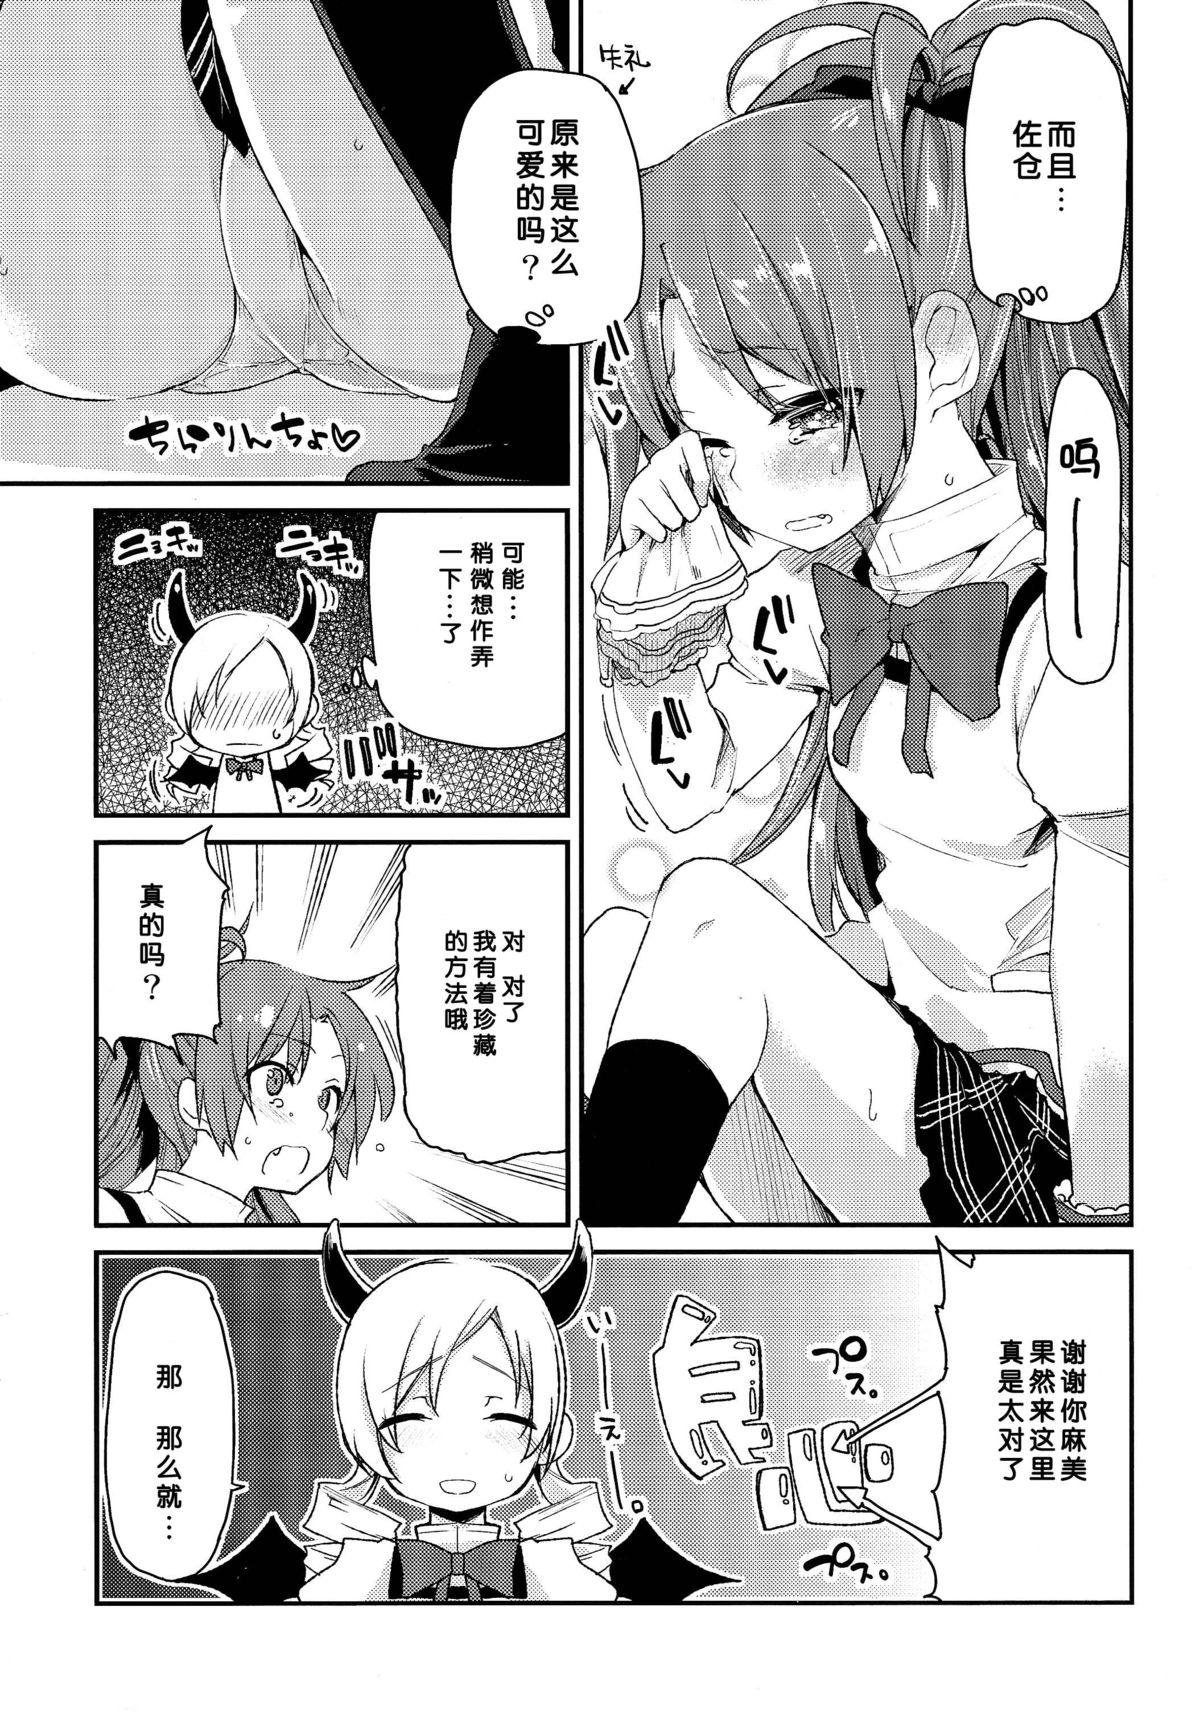 Spit Sakura-san ga Tottemo Kawaii kara - Puella magi madoka magica Gay Outdoors - Page 9